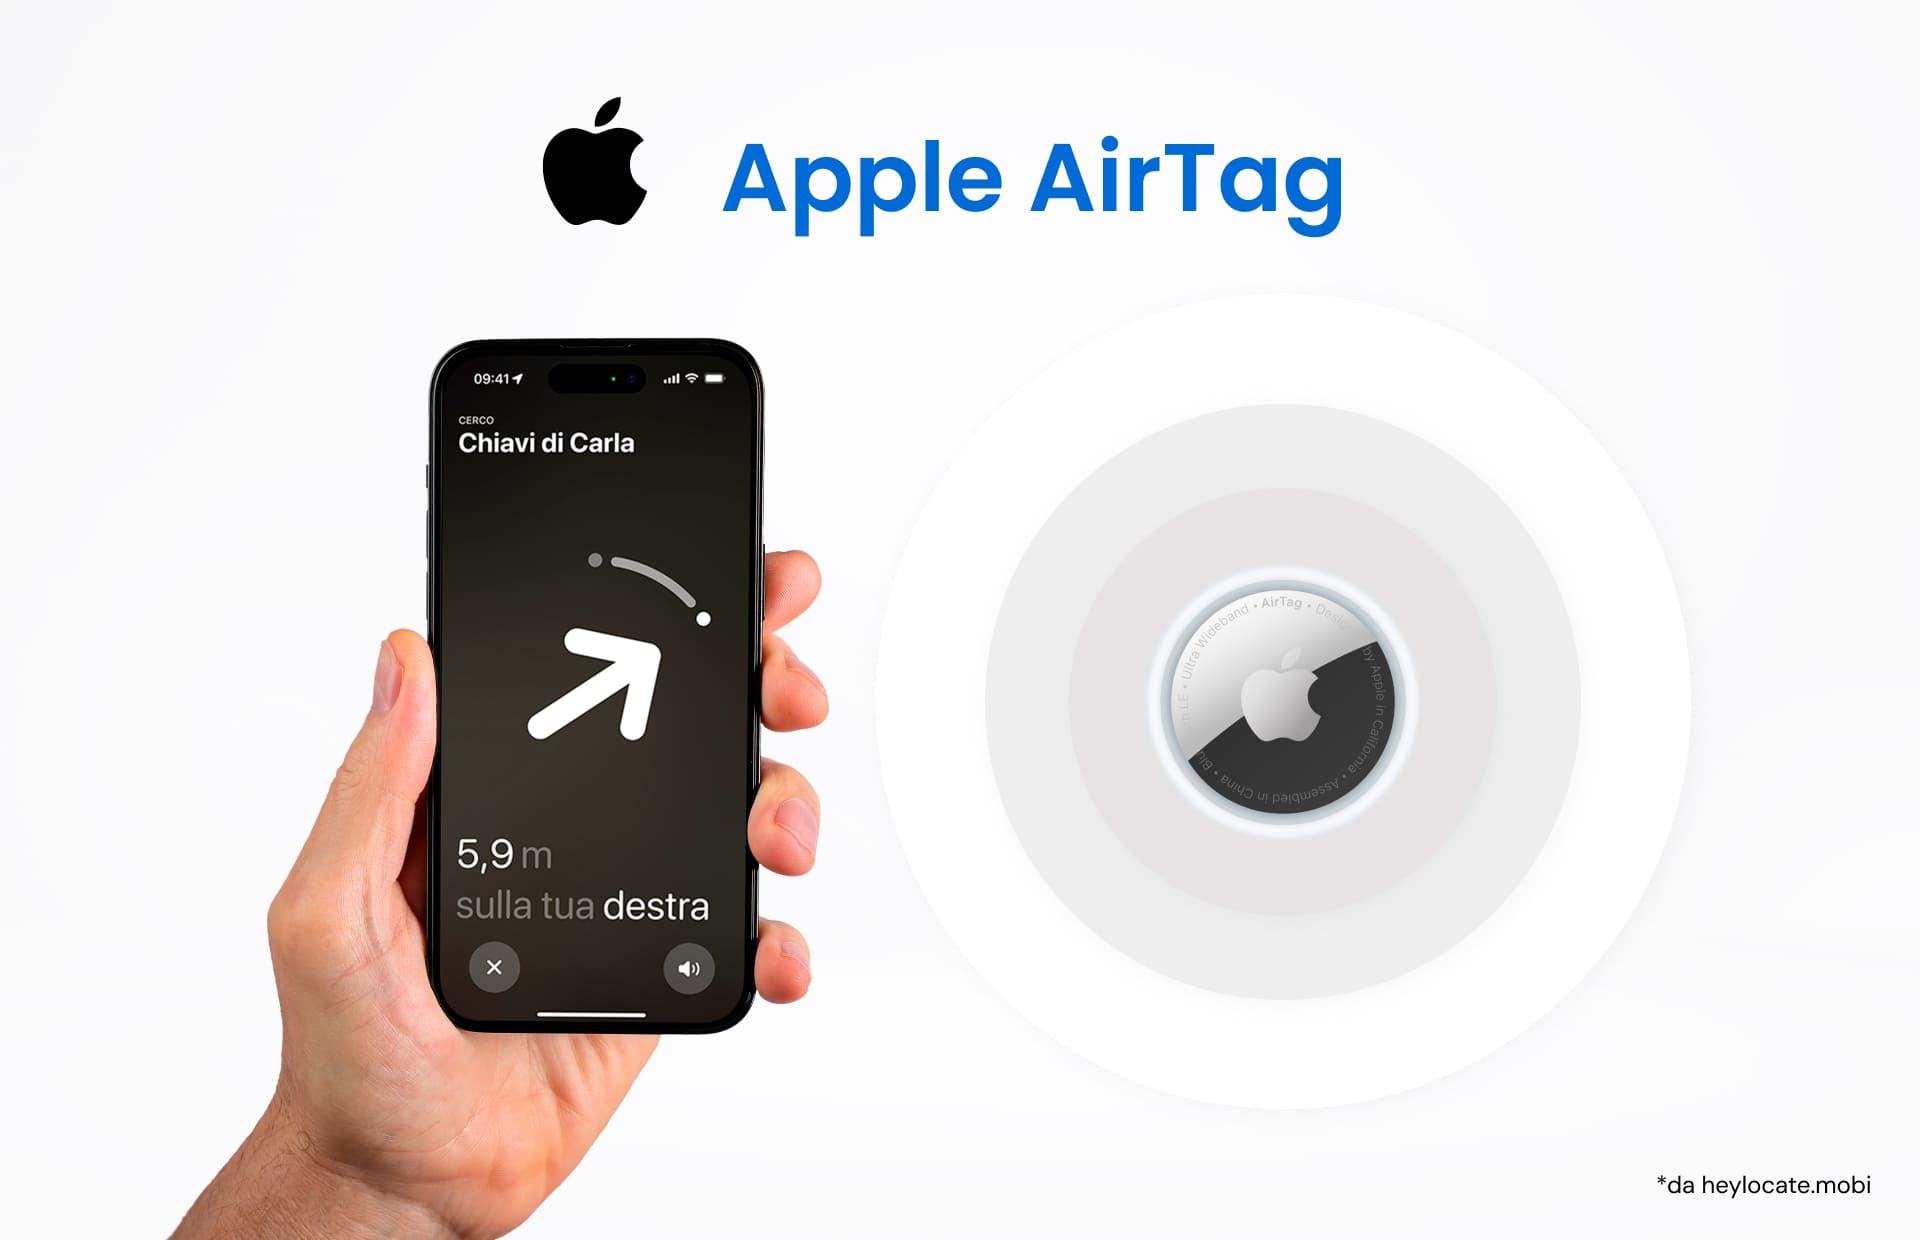 Un'immagine che mostra una mano che tiene un iPhone con l'interfaccia di tracciamento Apple AirTag sullo schermo e un Apple AirTag che illustra la funzione di tracciamento del dispositivo